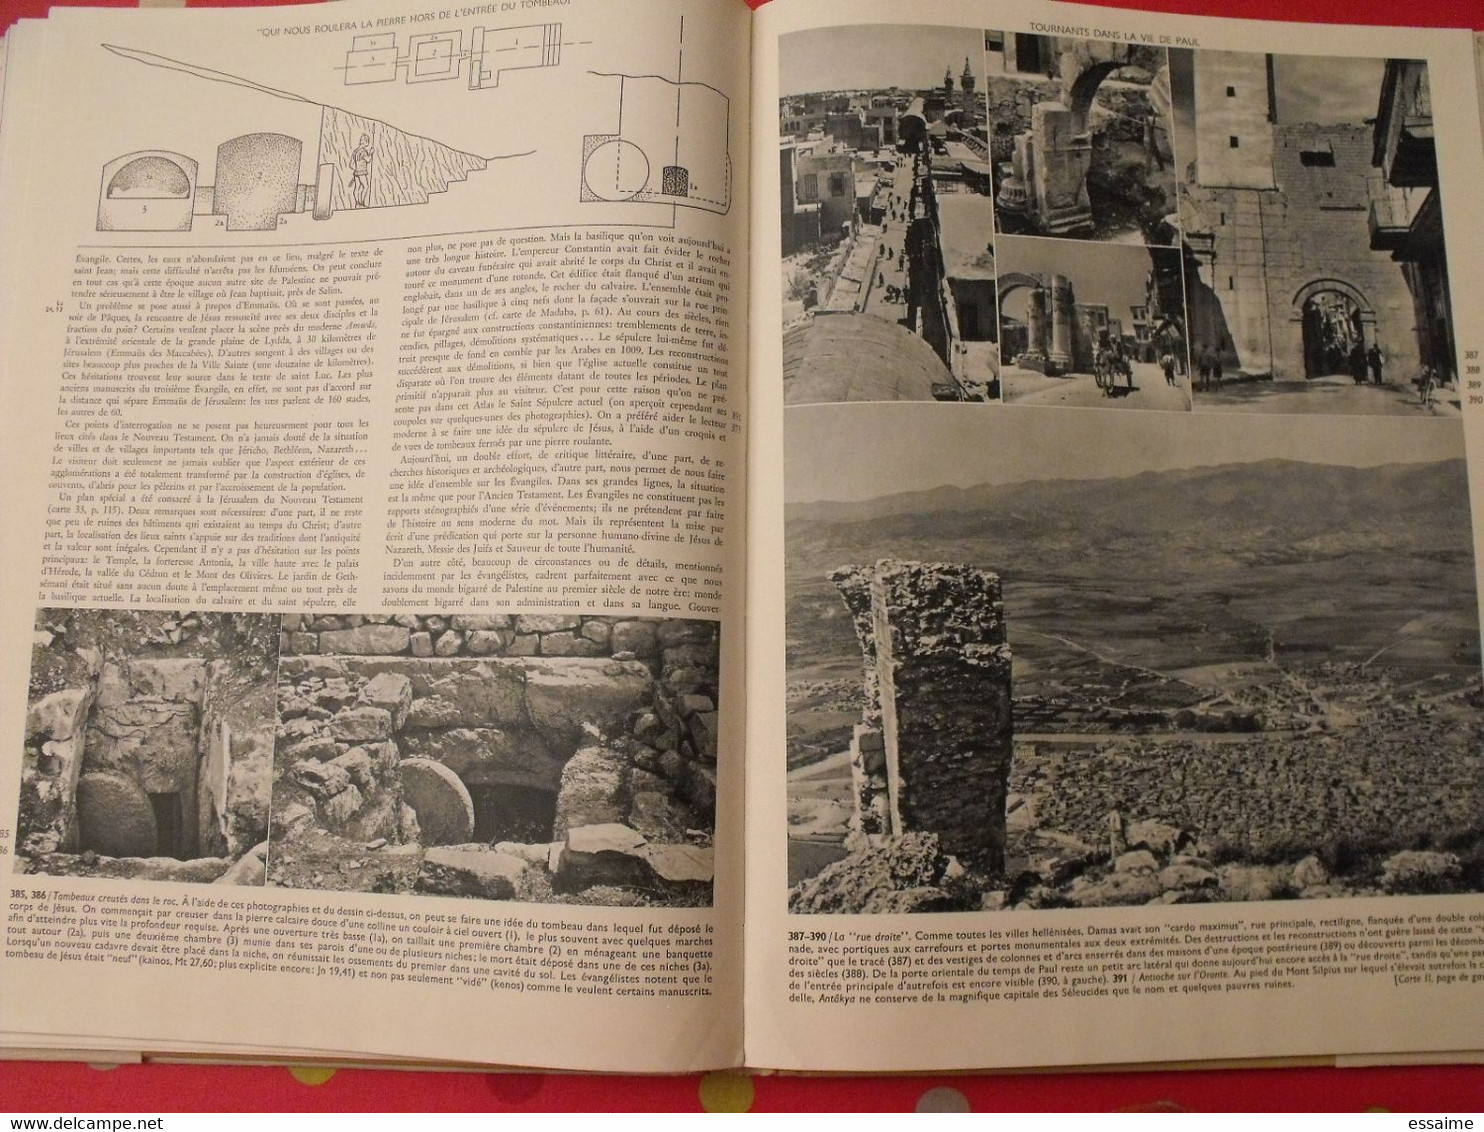 atlas de la bible. Grollenberg, Beaupère. Elsevier 1955. très illustré